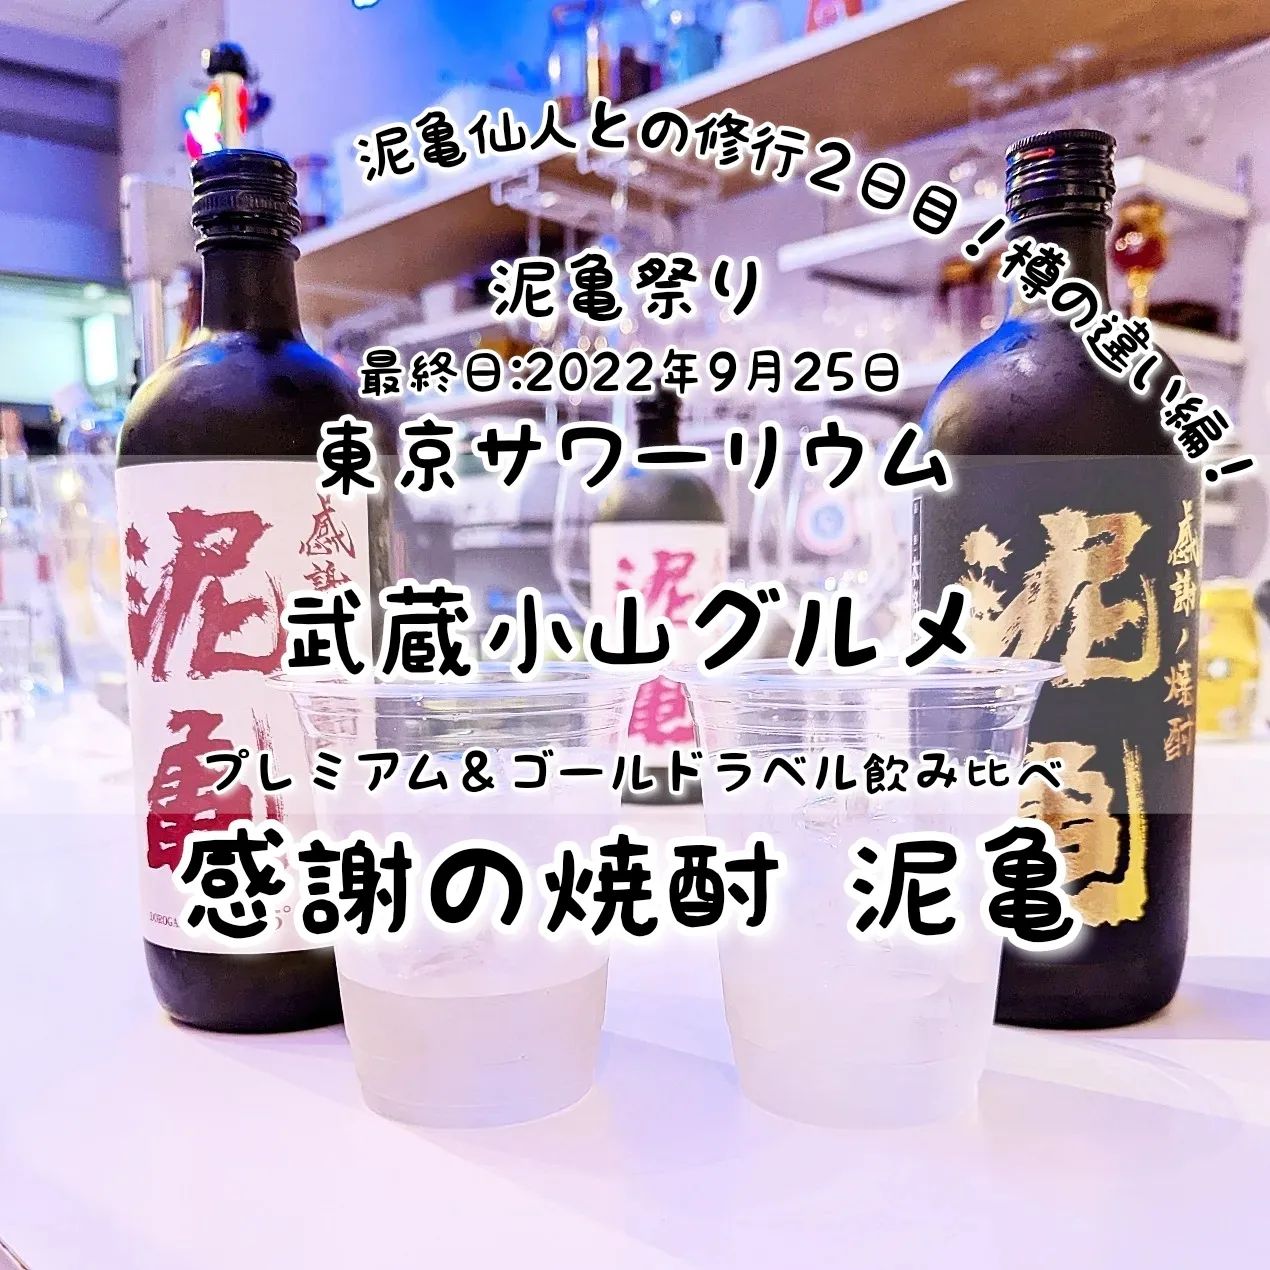 #武蔵小山グルメ情報 #東京サワーリウム #コーゾーレモンサワー #泥亀 おもいで度－－－☆－ #侍猫度マイルド系－－☆－－スパイシー系あっさり系－－☆－－コッテリ系シンプル系－－☆－－ゴロゴロ系オールド系－－☆－－ニュー系泥亀のPREMIUMもゴールドラベルもそれぞれ美味しい！どちらも麦焼酎ですが、PREMIUMはシェリー樽を使い、ゴールドラベルはコニャック樽を使っているそうです。うすく琥珀色がかったPREMIUMは、しっかりした旨味とコクを感じるまろやかな味わいでございました。もう1つの透きとおるゴールドラベルは、上品に香りつつスッキリした優しい味わいでございましたね！どちらも麦焼酎を楽しめますが、ゴールドラベルは一部の飲み屋でしか飲めない激レア物で、一般酒販店やネットで売っていないとか聞いてしまうと、ゴールドを飲みたくなっちゃいますよね！普段こちらのお店は、ワインと生搾りサワーのお店でございますが、2022年9月24日〜9月25日の期間限定で泥亀祭りイベントが開催されました。イベント中に泥亀仙人（代表）と出会い、人気の焼酎ブランドの泥亀を全く知らずに泥亀仙人と泥亀をいただきつつ修行していただけたわけでございます。今思うと終始で貴重過ぎる体験ができる祭りでございましたね。今後は、泥亀仙流の教えをいかし、食べ歩きして泥亀を見つけた時は頼んでみようと思います！…お酒弱いので時々でございますがね。場所は、武蔵小山駅から出てすぐ目の前にあるタワーマンションの麓でございます。駅からMUSAKO小路に入ってすぐ右手側でございますね。【侍猫の育て方】メインサイトも見ていただくと、侍猫が元気になって武蔵小山をもっと食べ歩きます！※メインサイトへの移動はプロフィールのURLが簡単！※地図あり→ @musashikoyama.news → https://musashikoyama.samuraicat.jp/ 記事の他、広告の詳細まで見ていただいたムサコマニアの皆様ありがとうございます！【侍猫のご飯のあげ方】武蔵小山駅周辺のグルメ情報をお気軽にご連絡ください。気まぐれにUPします！ #武蔵小山 #武蔵小山ランチ #武蔵小山商店街 #武蔵小山グルメ #武蔵小山カフェ #西小山 #戸越銀座 #不動前 #碑文谷 #戸越 #中延 #荏原中延 #目黒本町 #品川 #品川区 #品川グルメ #目黒 #目黒区 #目黒グルメ #東京 #東京グルメ #tokyofood #tokyo #レモンサワー